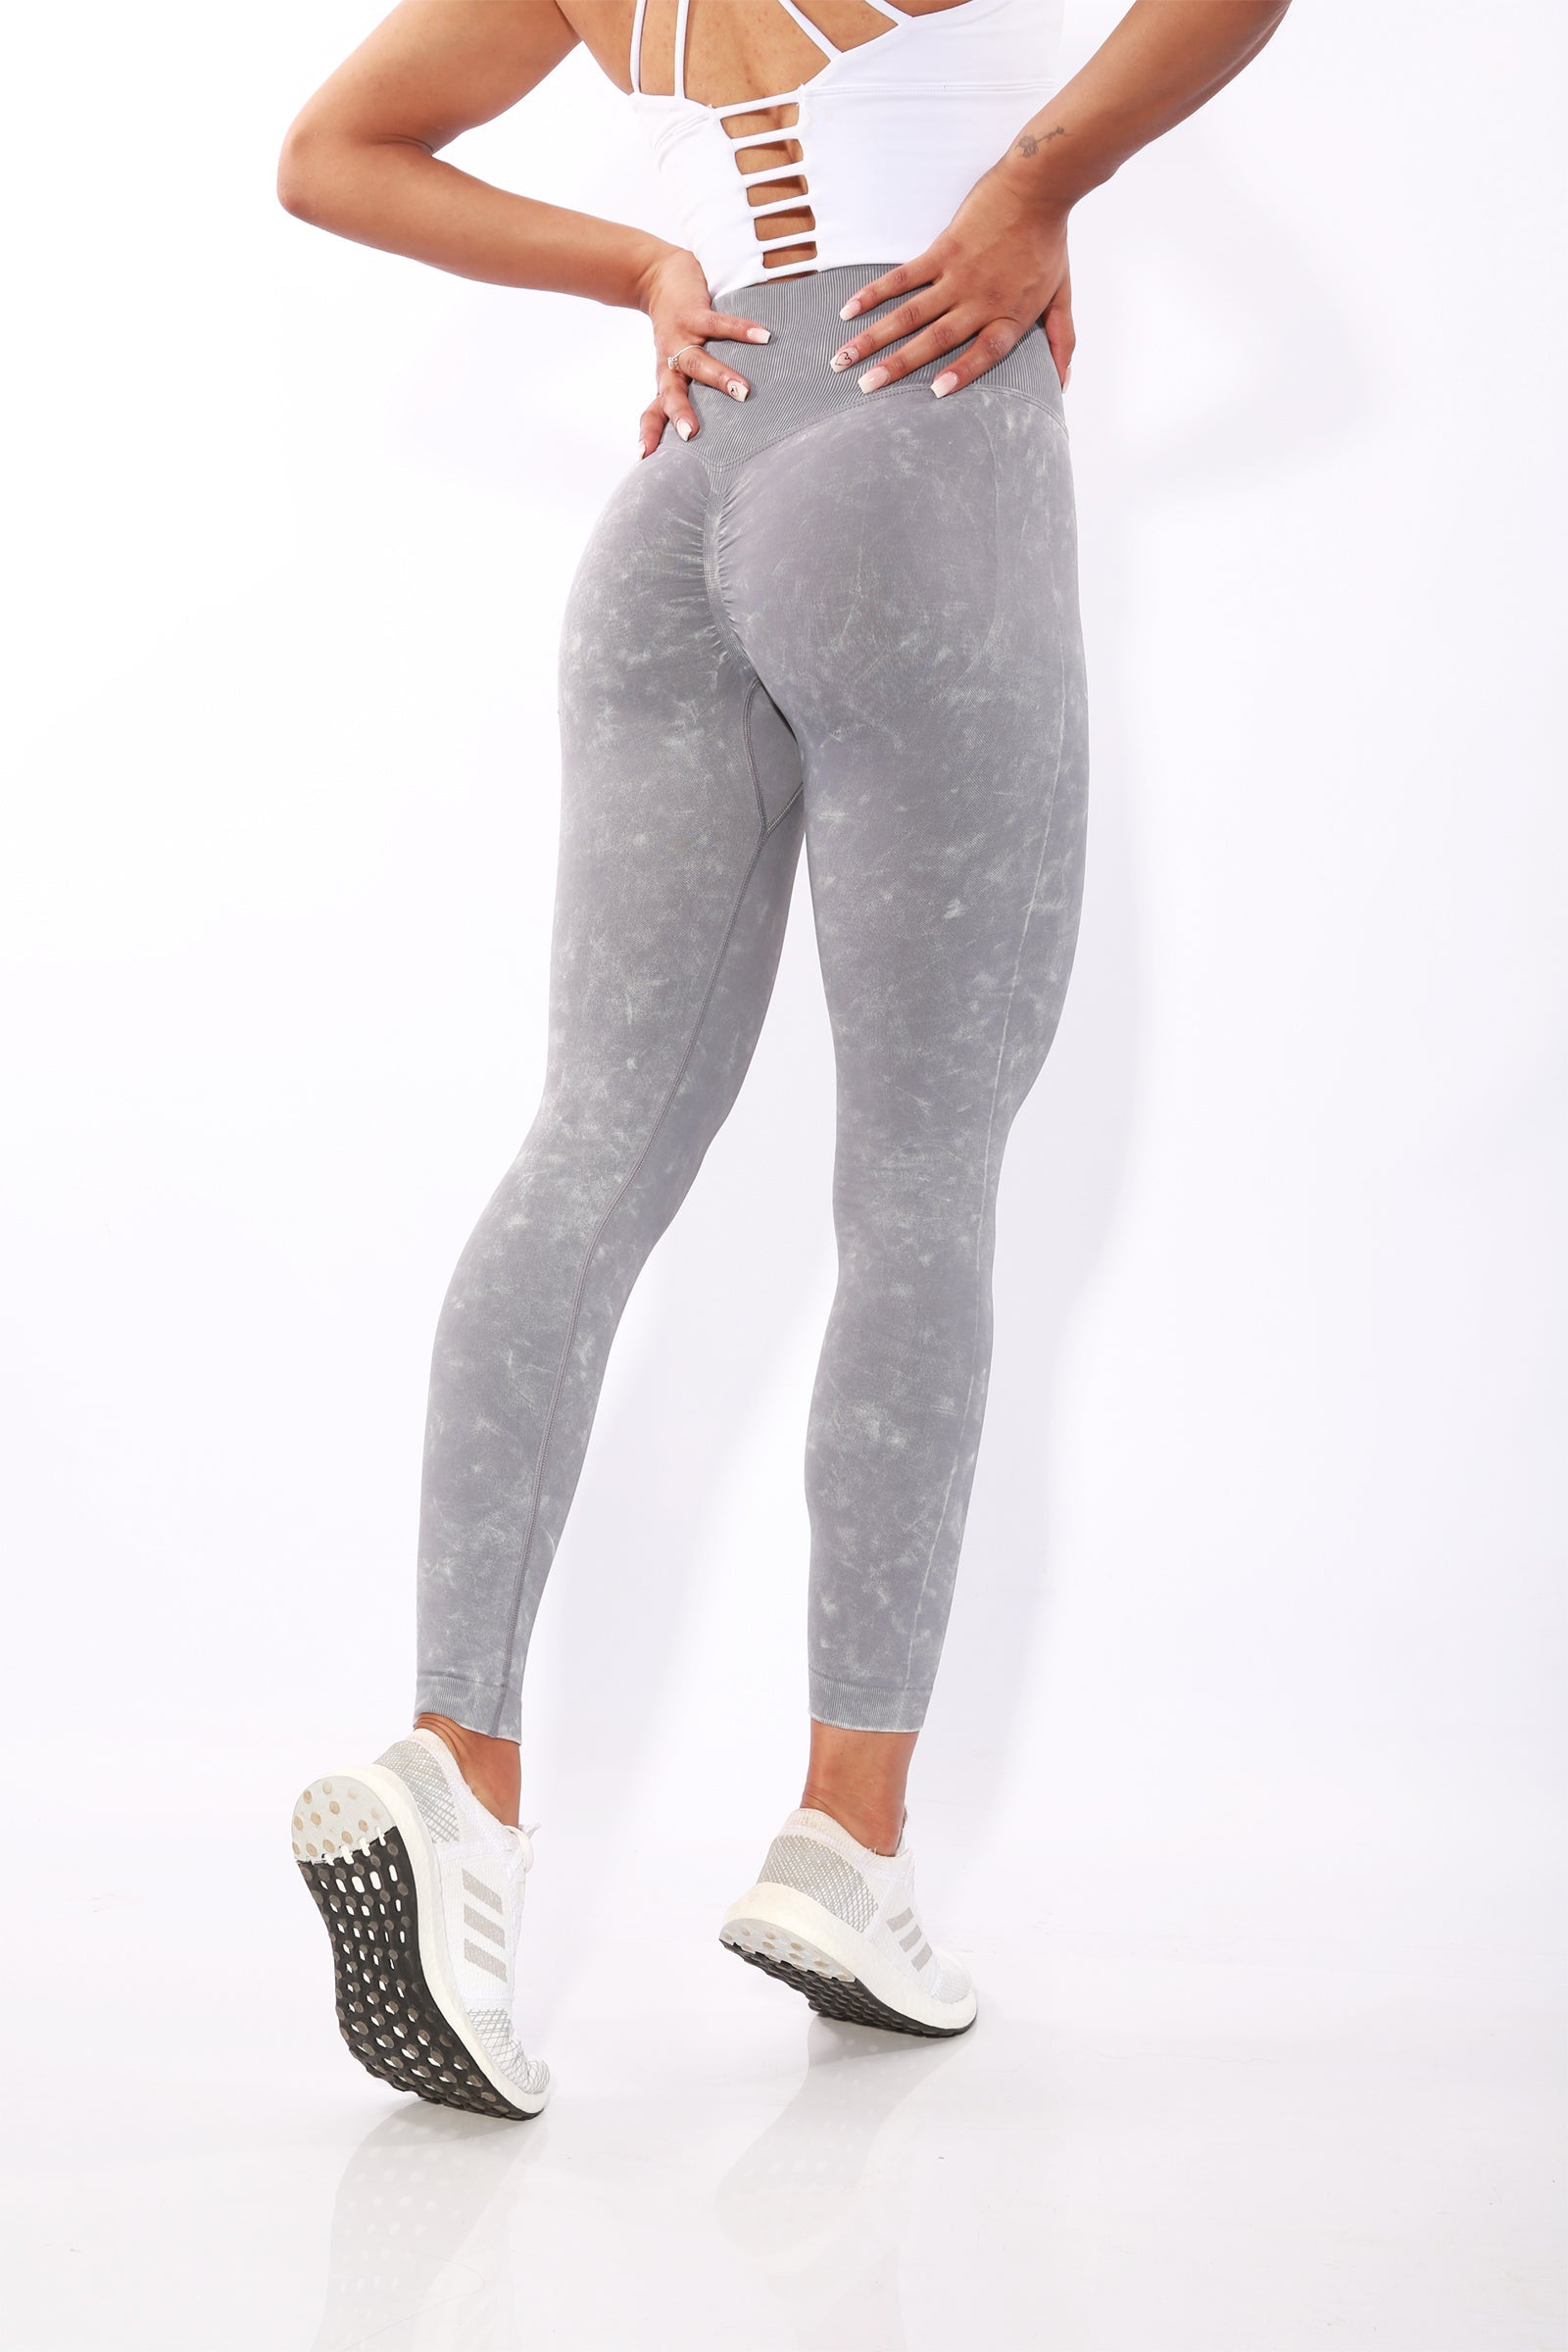 Gym Bunny Summer Scrunch leggings -Grey wash